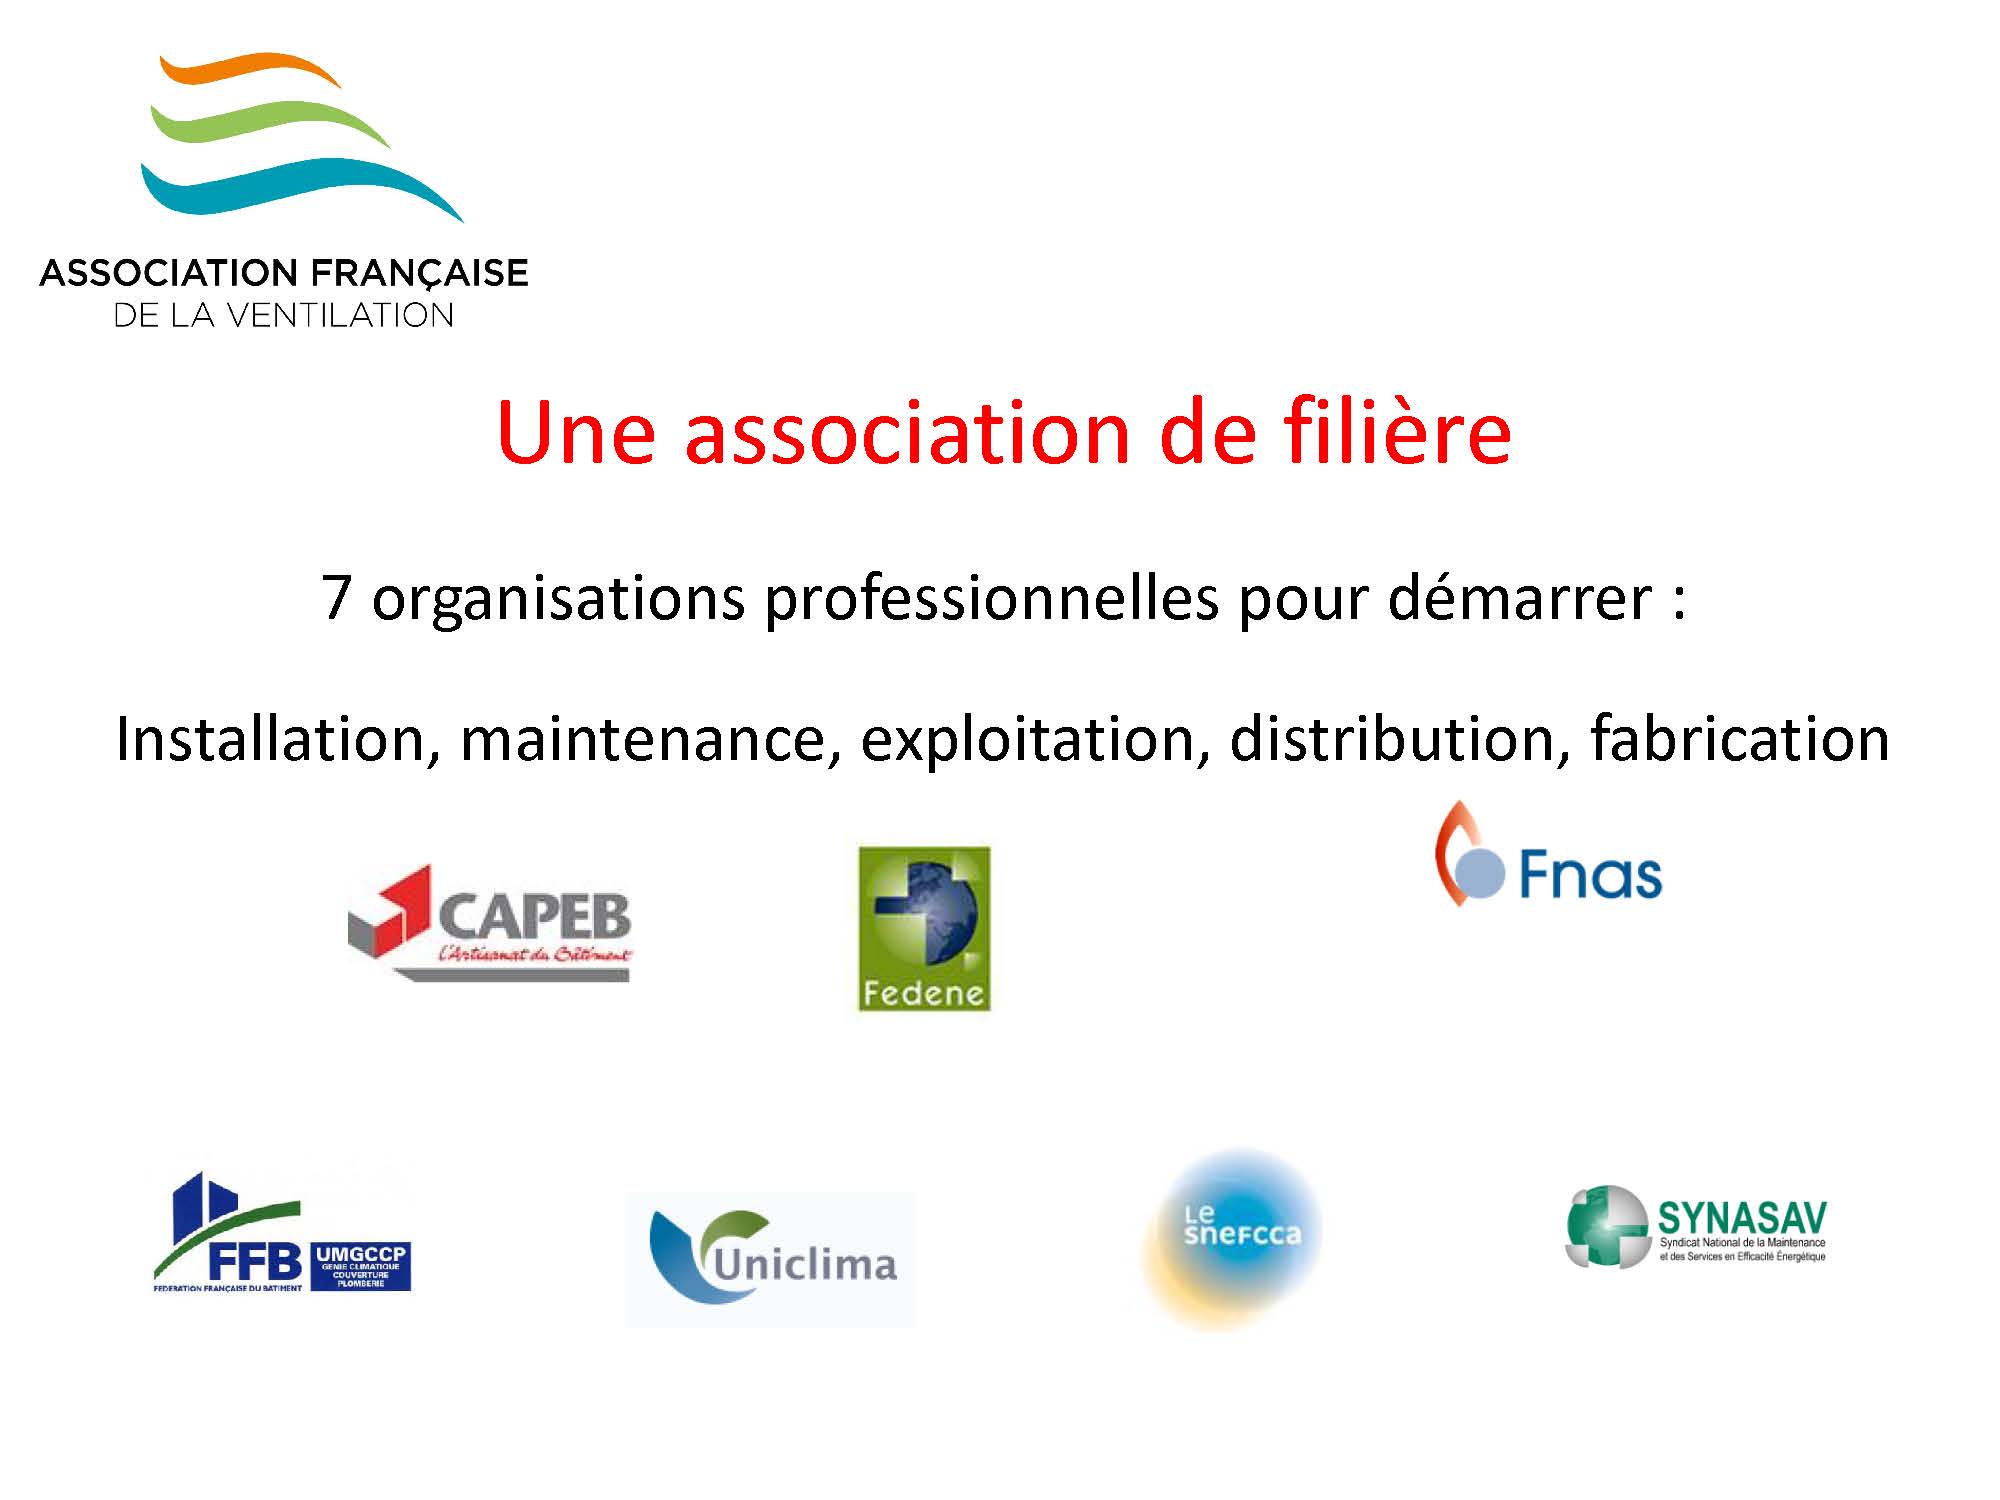 L'AFPAC adresse ses félicitations et voeux de réussite à l'Association française de la ventilation